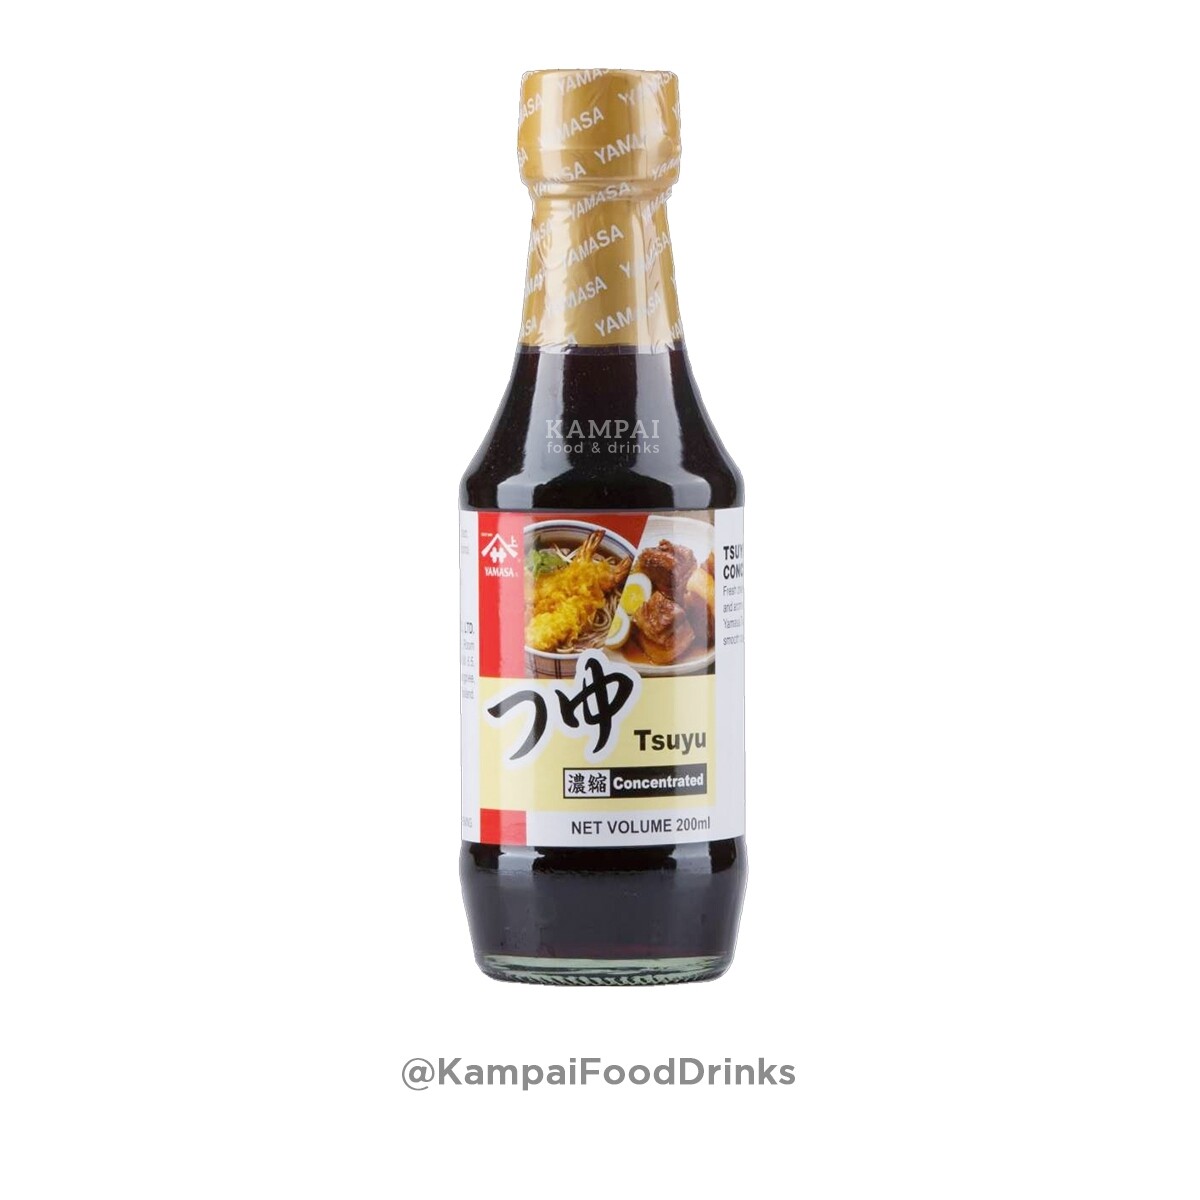 ยามาซ่า ซอสซึยุ 200 ml. (ใช้ทำ ซอสน้ำซุปสุกี้ น้ำจิ้มบะหมี่เย็น น้ำจิ้มเทมปุระ น้ำซุปสุกียากี้ญี่ปุ่น ) Yamasa Tsuyu Sauce  by Kampai , KampaiFoo